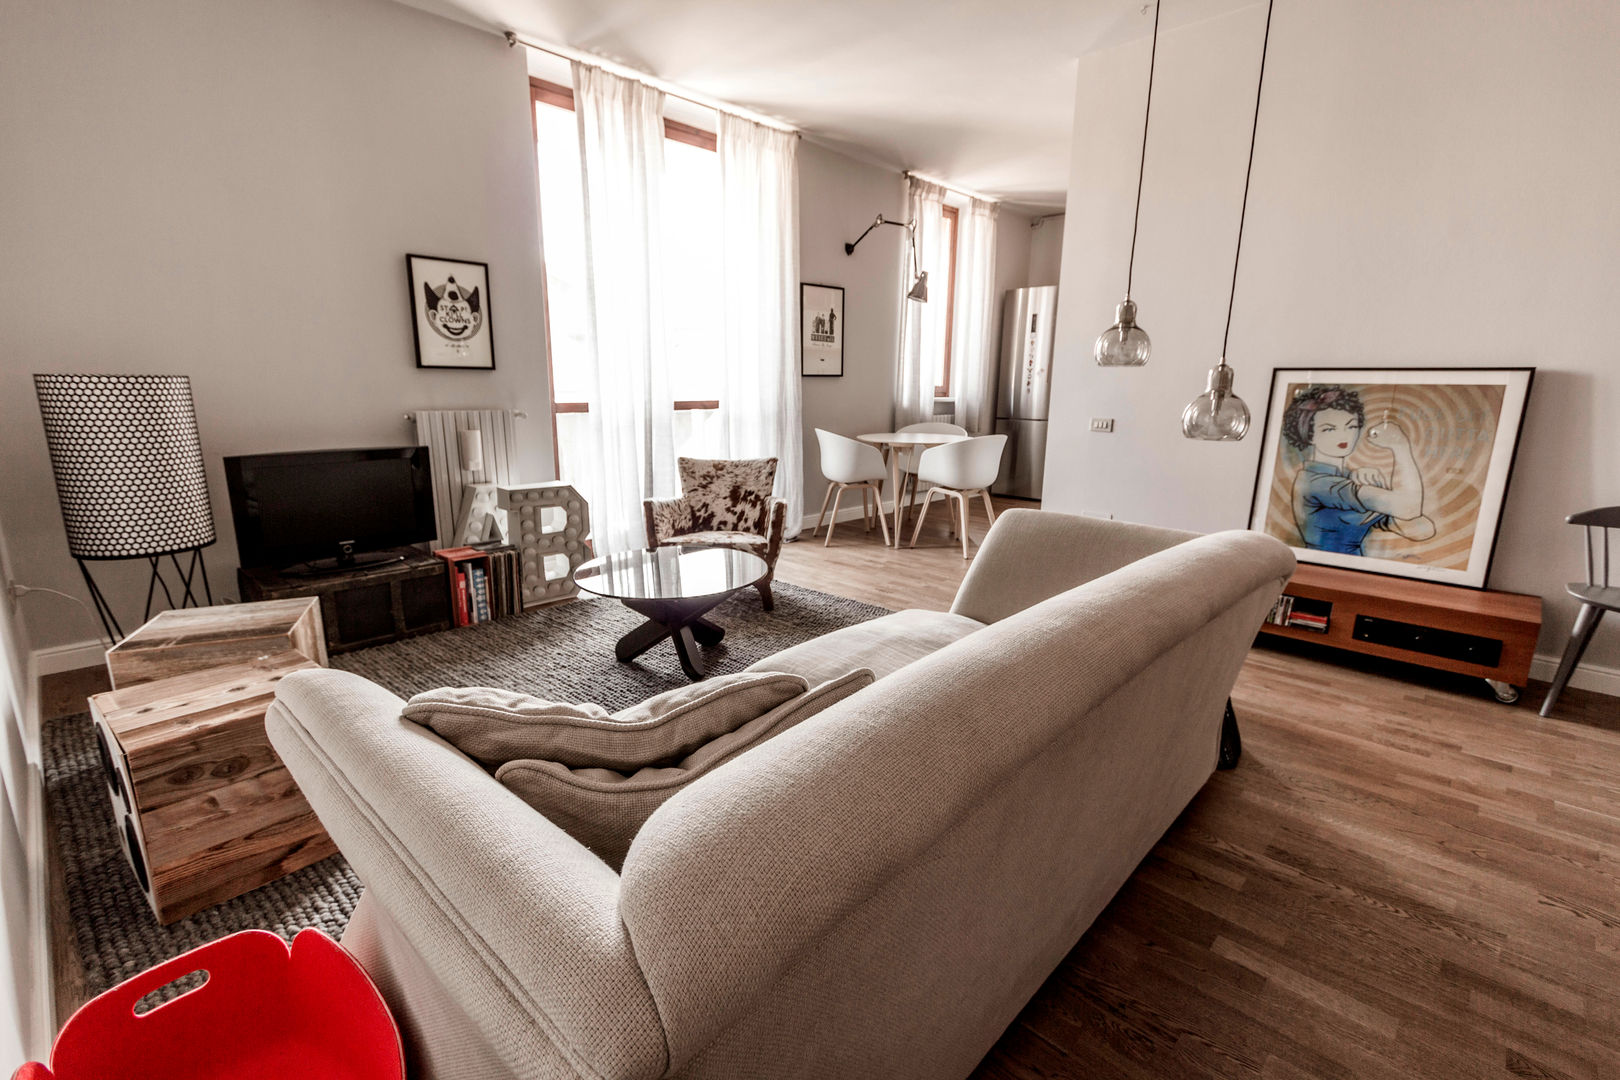 Appartamento Residenziale - Brianza 2014, Galleria del Vento Galleria del Vento Salas de estar escandinavas